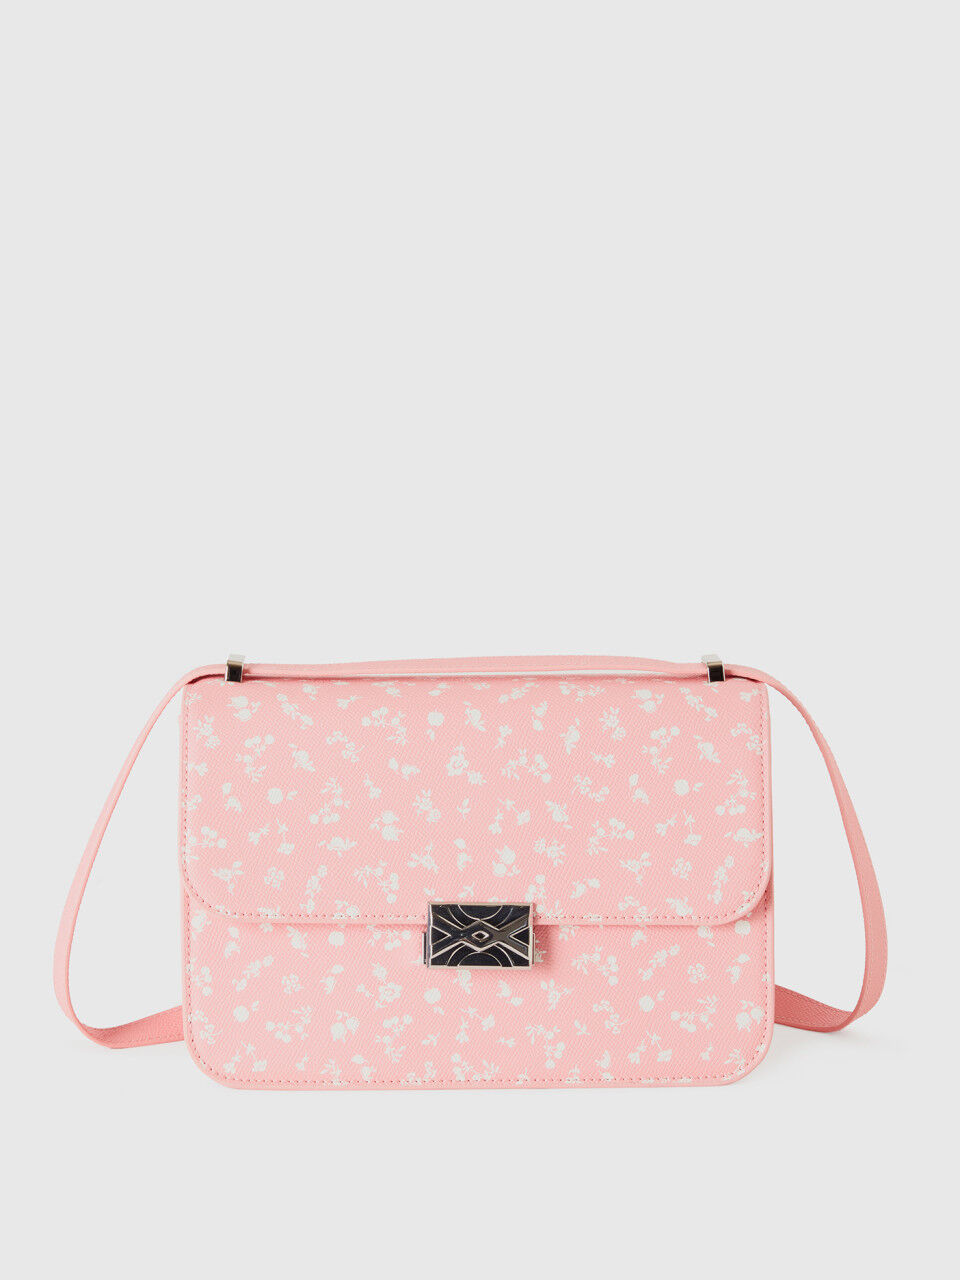 Large pink floral patterned Be Bag